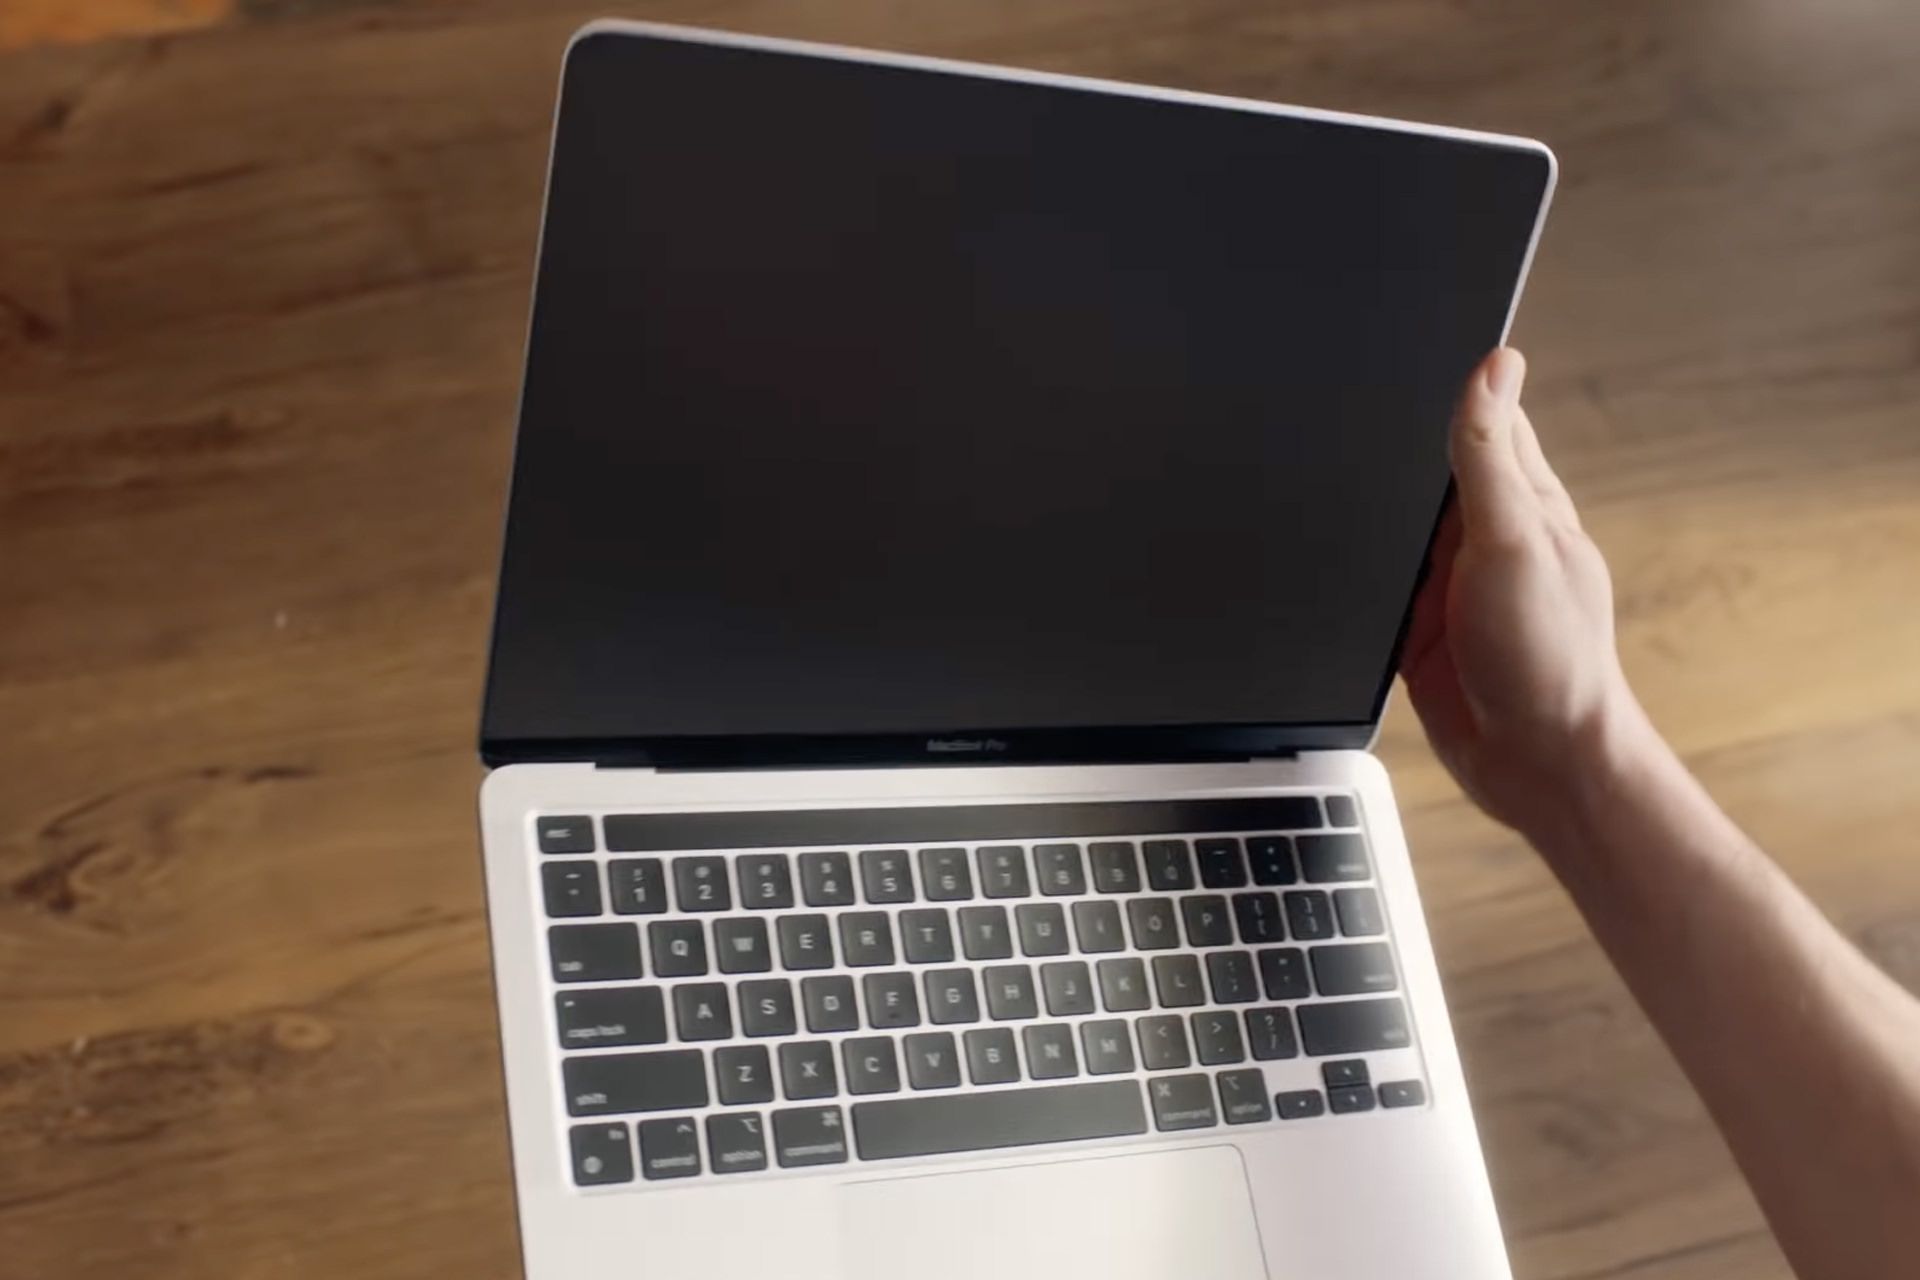 مرجع متخصصين ايران مك بوك پرو / MacBook Pro در تبليغ ويديويي اينتل از نماي جلو در دست